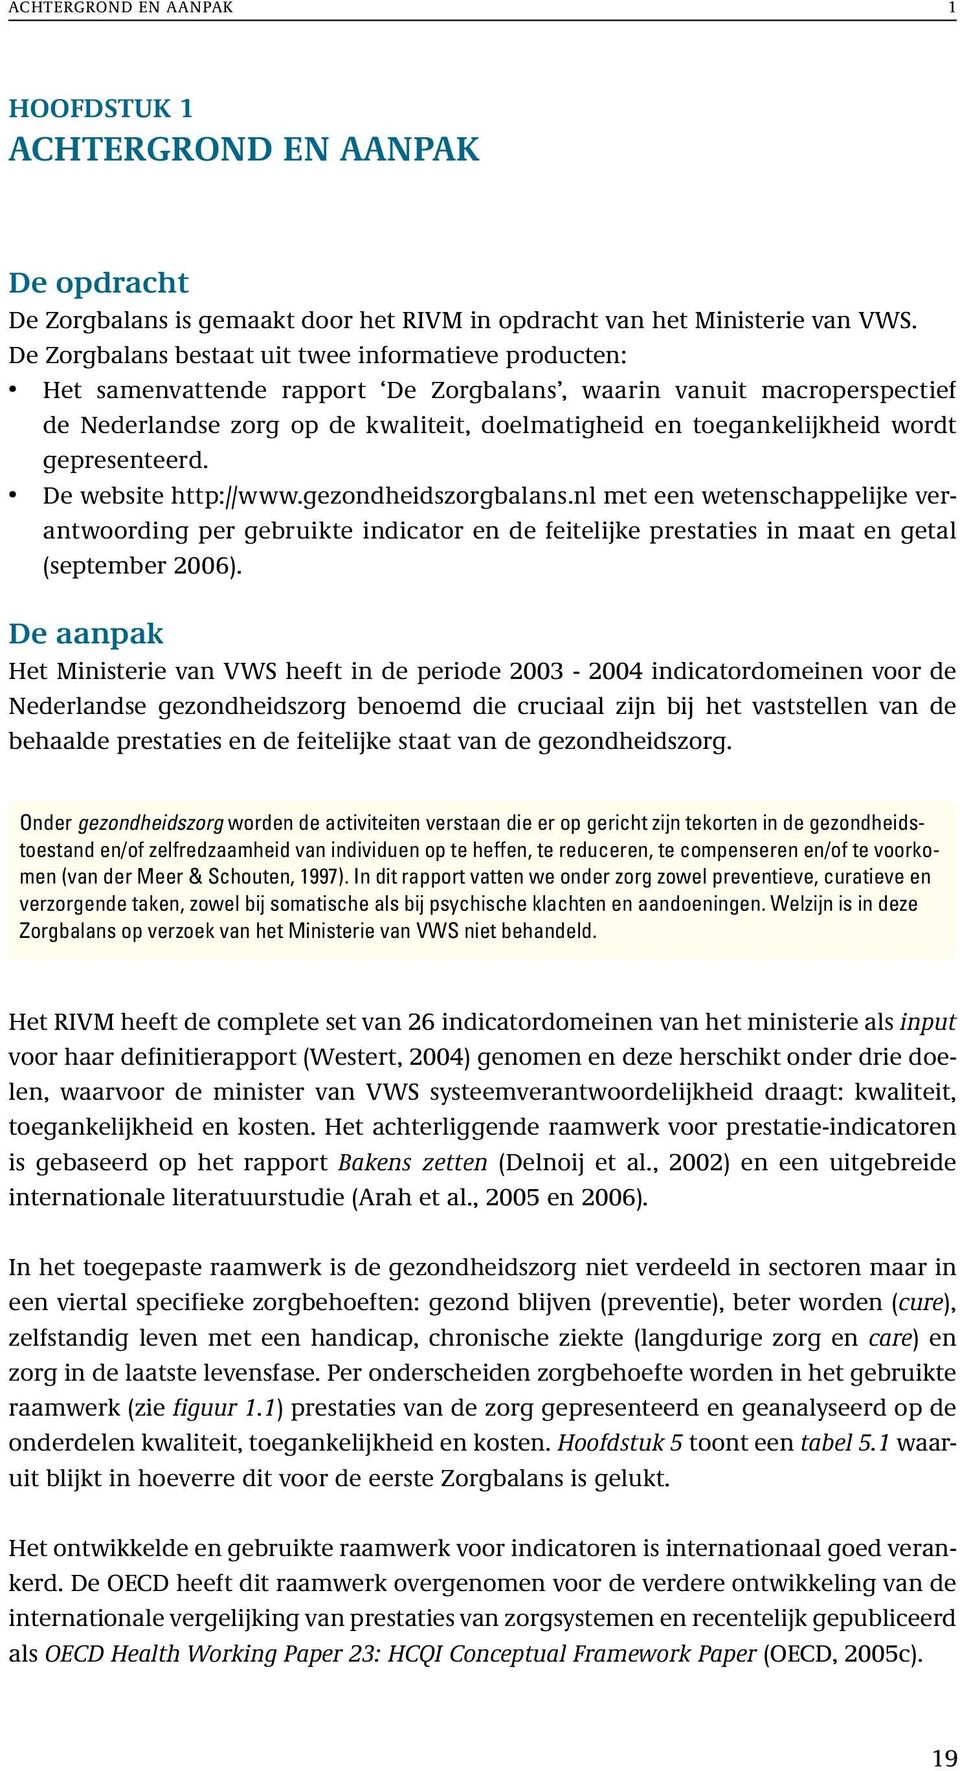 wordt gepresenteerd. De website http://www.gezondheidszorgbalans.nl met een wetenschappelijke verantwoording per gebruikte indicator en de feitelijke prestaties in maat en getal (september 2006).